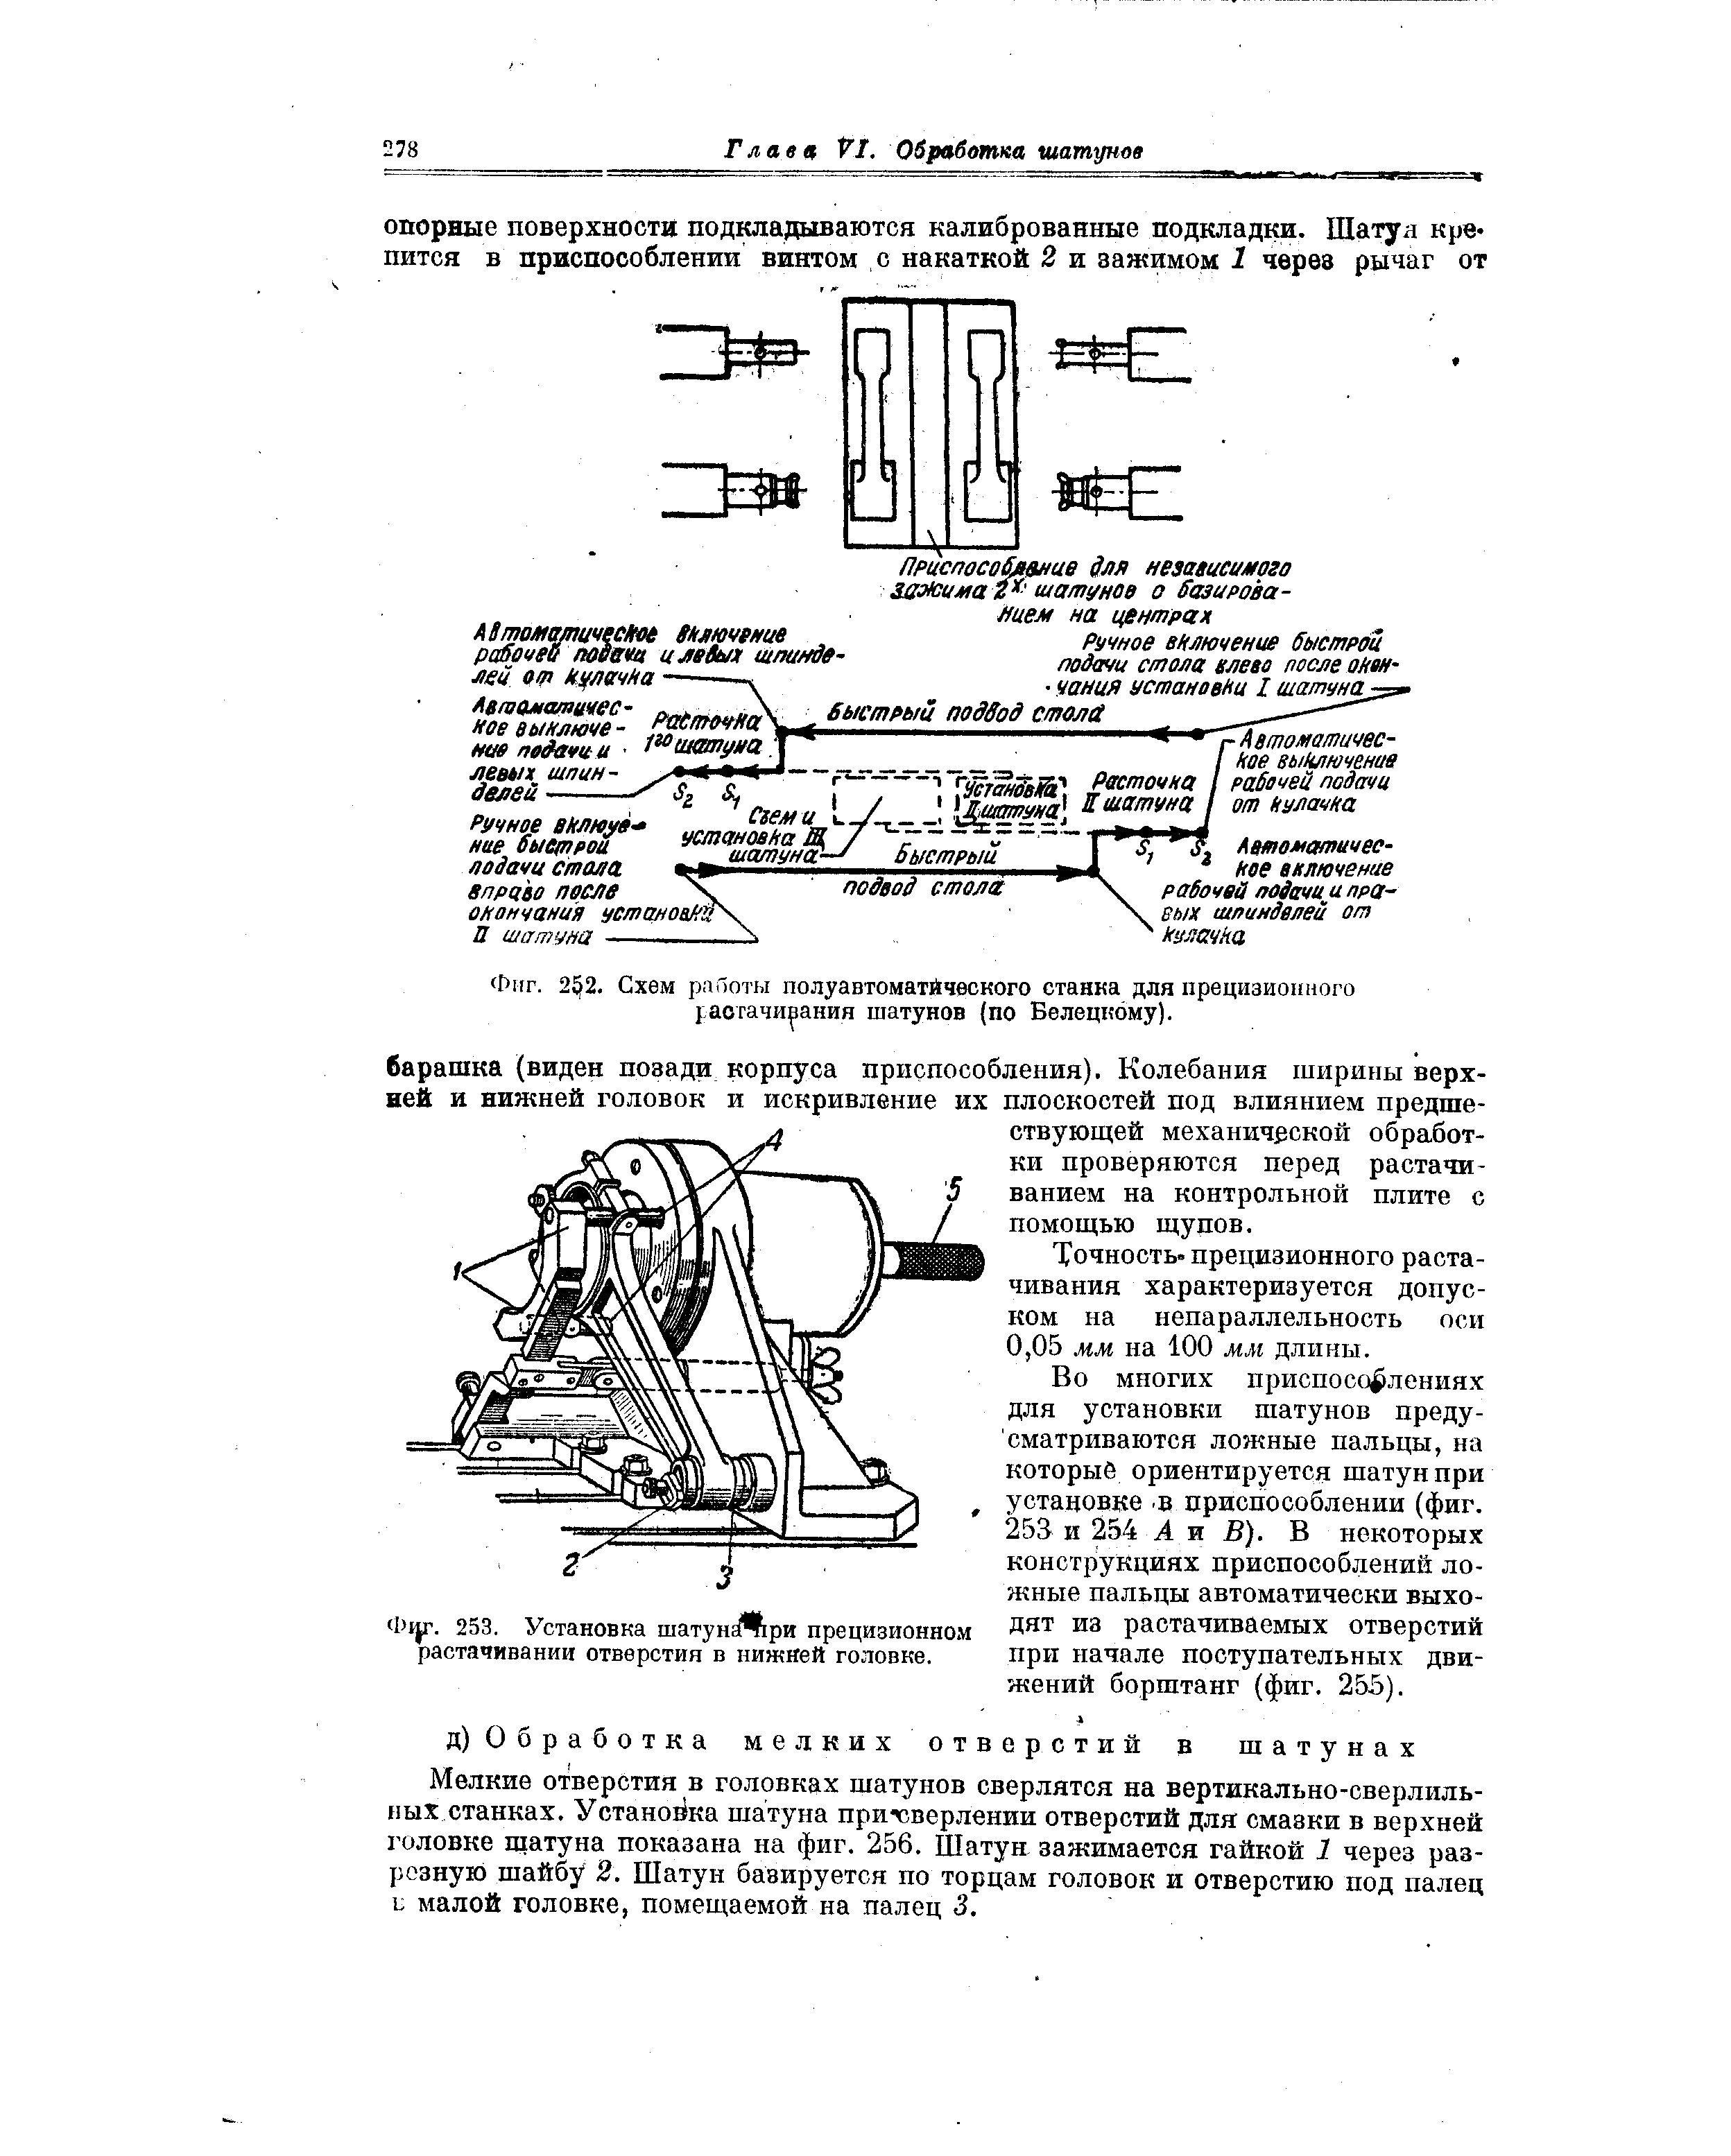 Фиг. 2 2. Схем работы полуавтоматйческого станка для прецизионного растачивания шатунов (по Белецкому).
